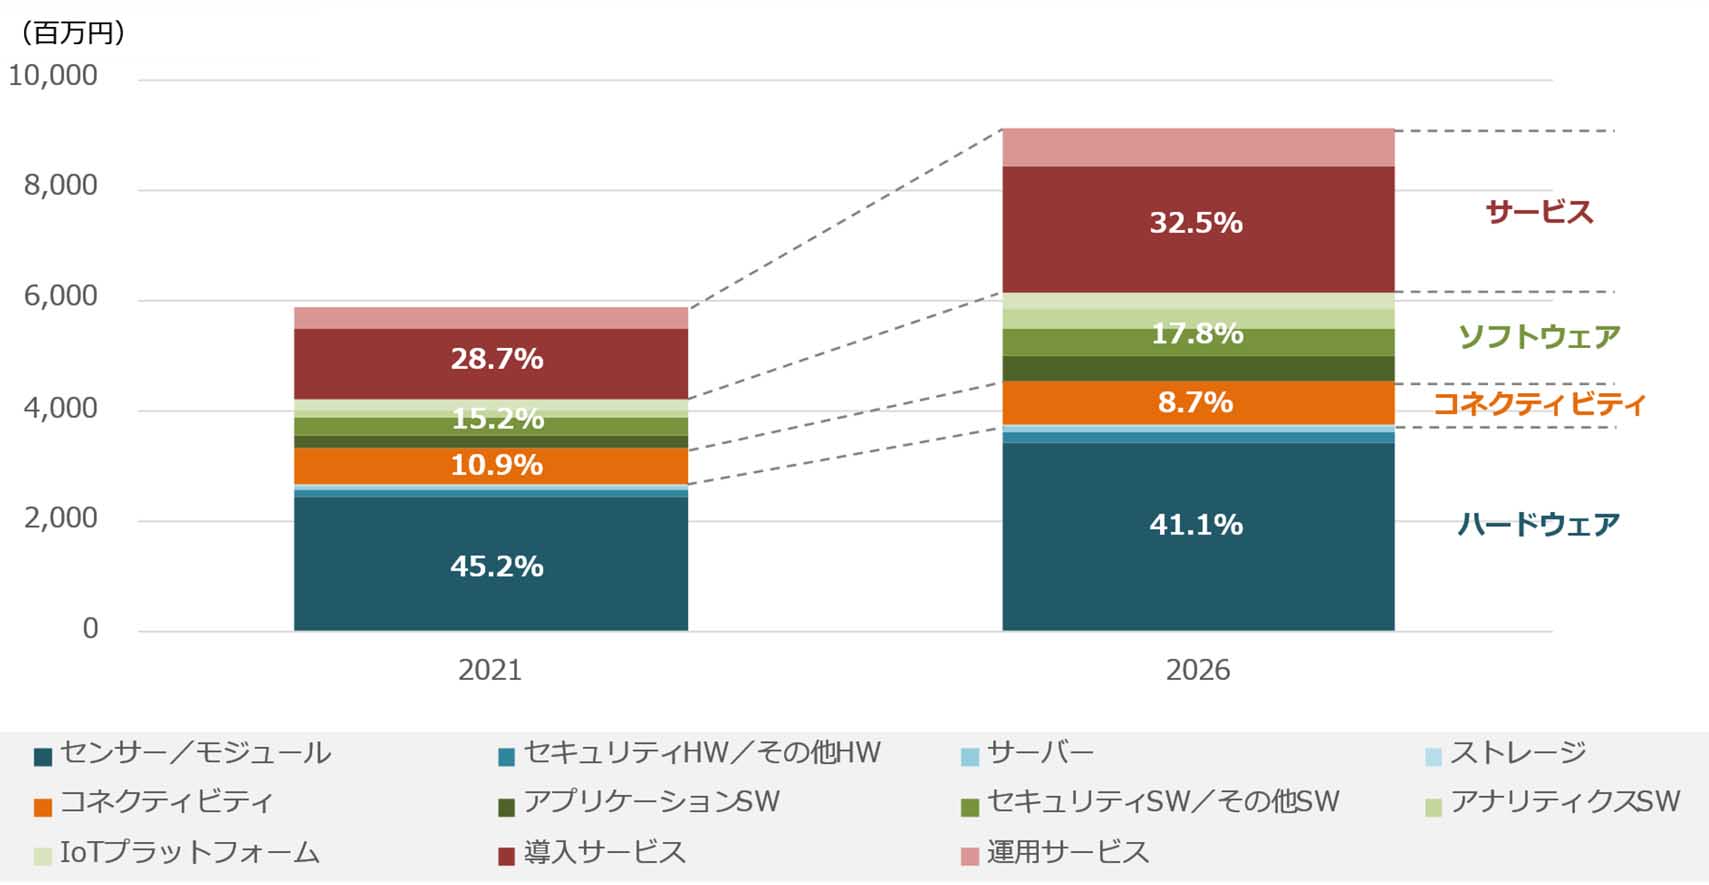 国内IoT市場 技術別の支出額規模予測と支出額割合、2021年と2026年の比較　Source: IDC Japan, 4/2022